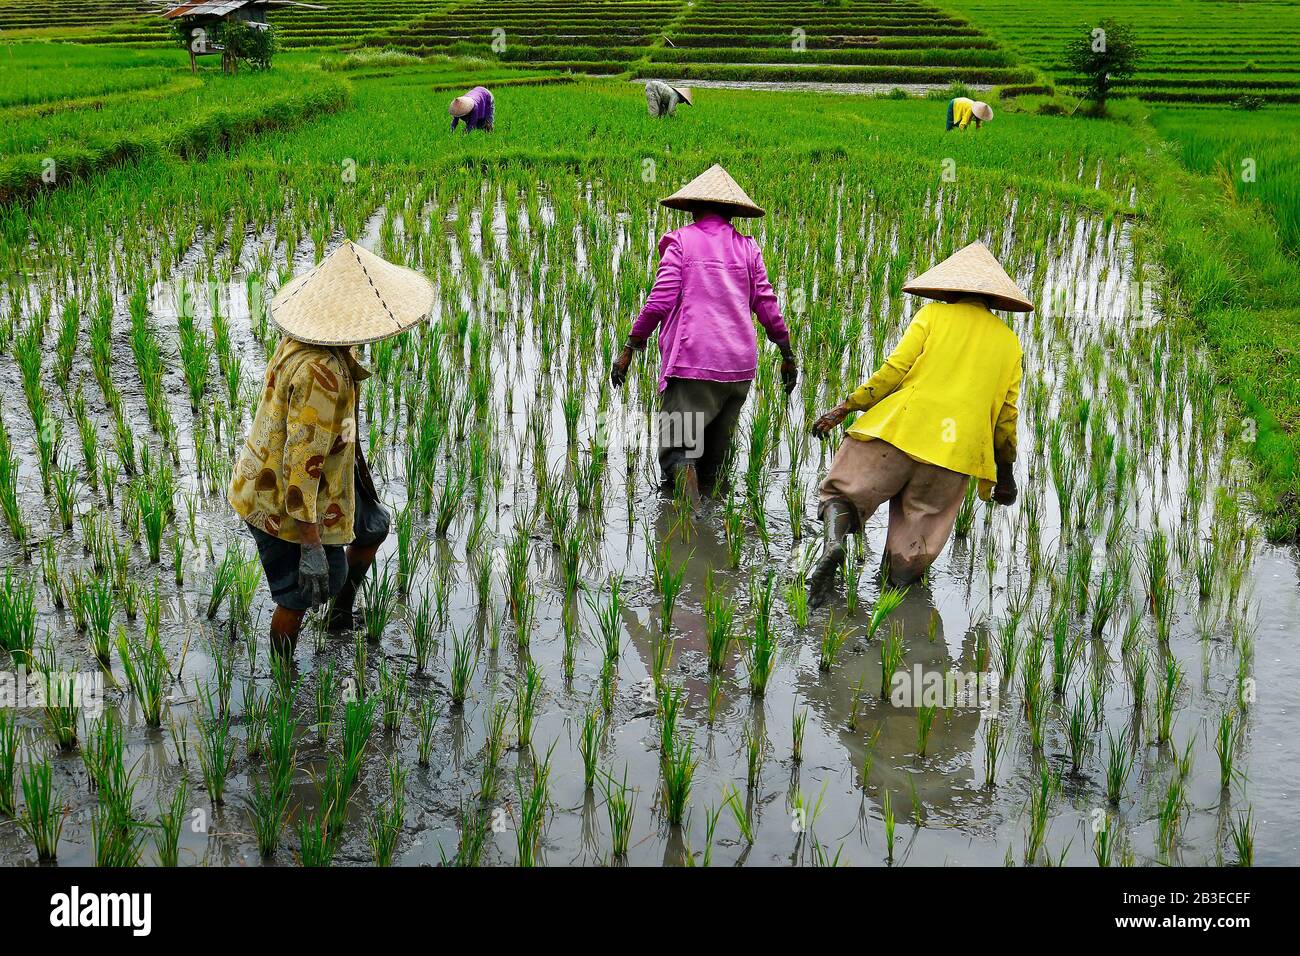 Balinesischer Arbeiter mit Bambushut pflegen sein Reisfeld Stockfotografie  - Alamy